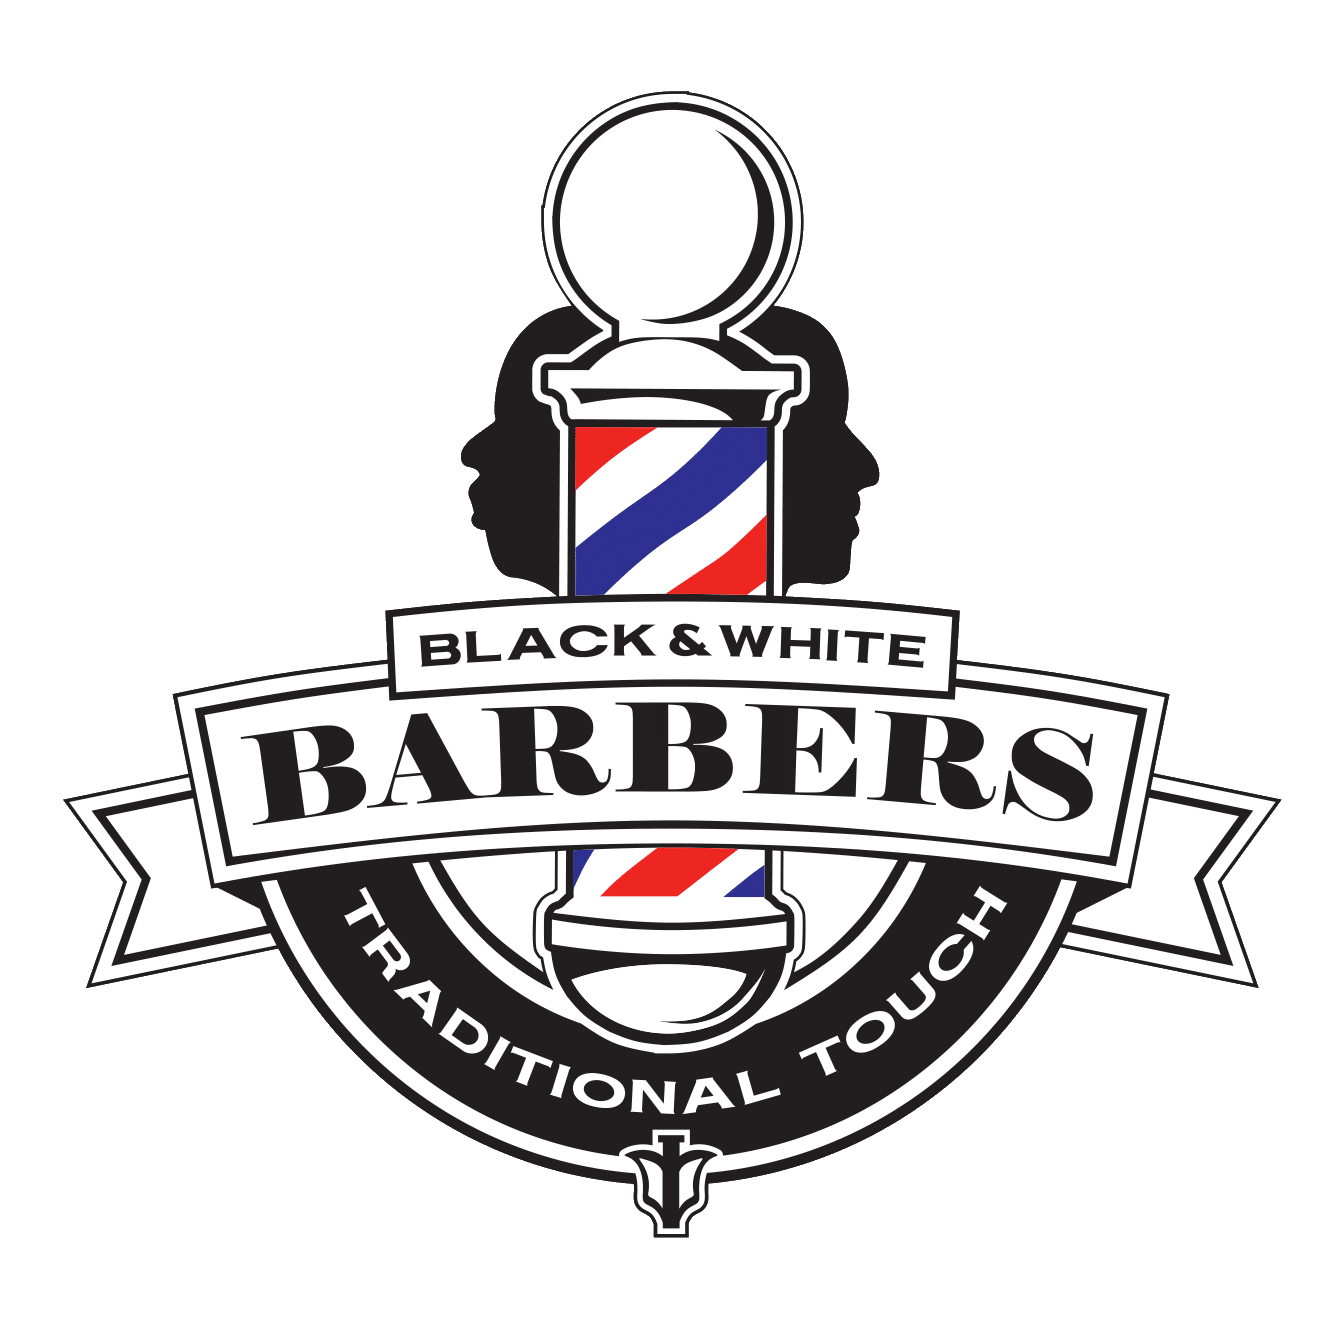 Black & White Barbers